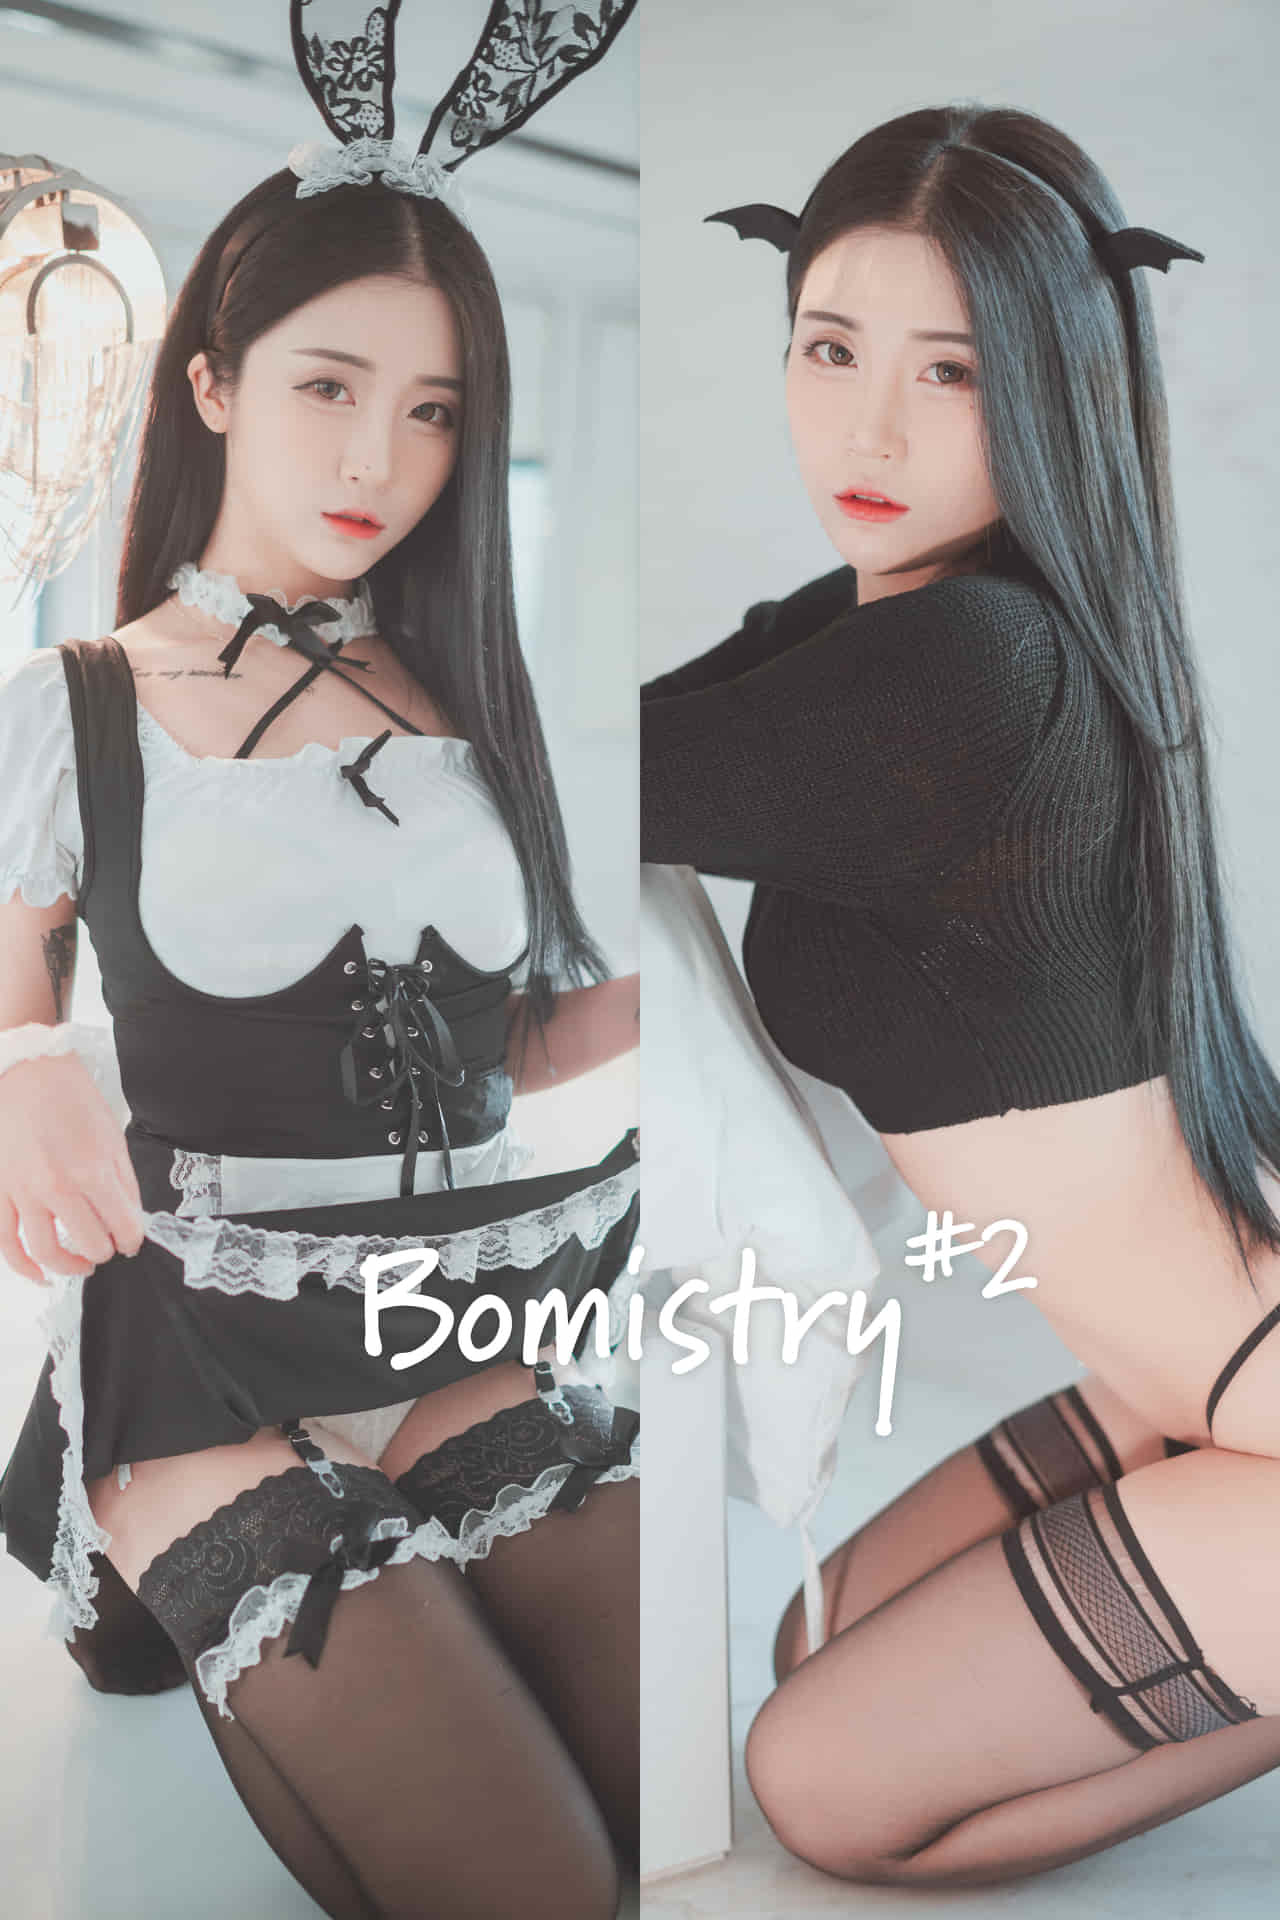 韩国女团成员Bomi性感写真集 NO.02 “Bomistry #2”